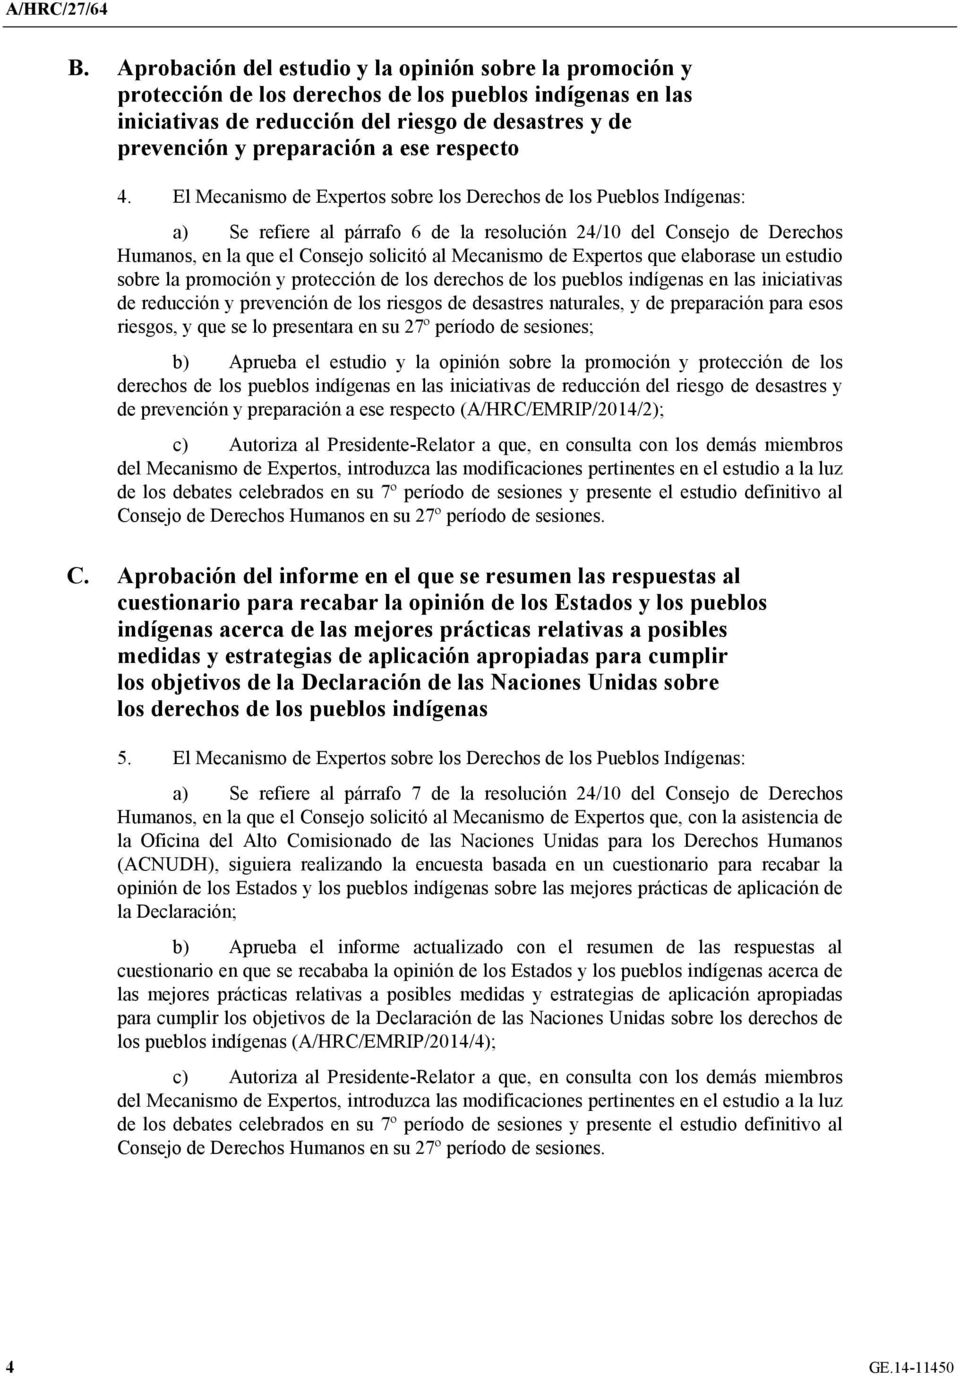 El Mecanismo de Expertos sobre los Derechos de los Pueblos Indígenas: a) Se refiere al párrafo 6 de la resolución 24/10 del Consejo de Derechos Humanos, en la que el Consejo solicitó al Mecanismo de